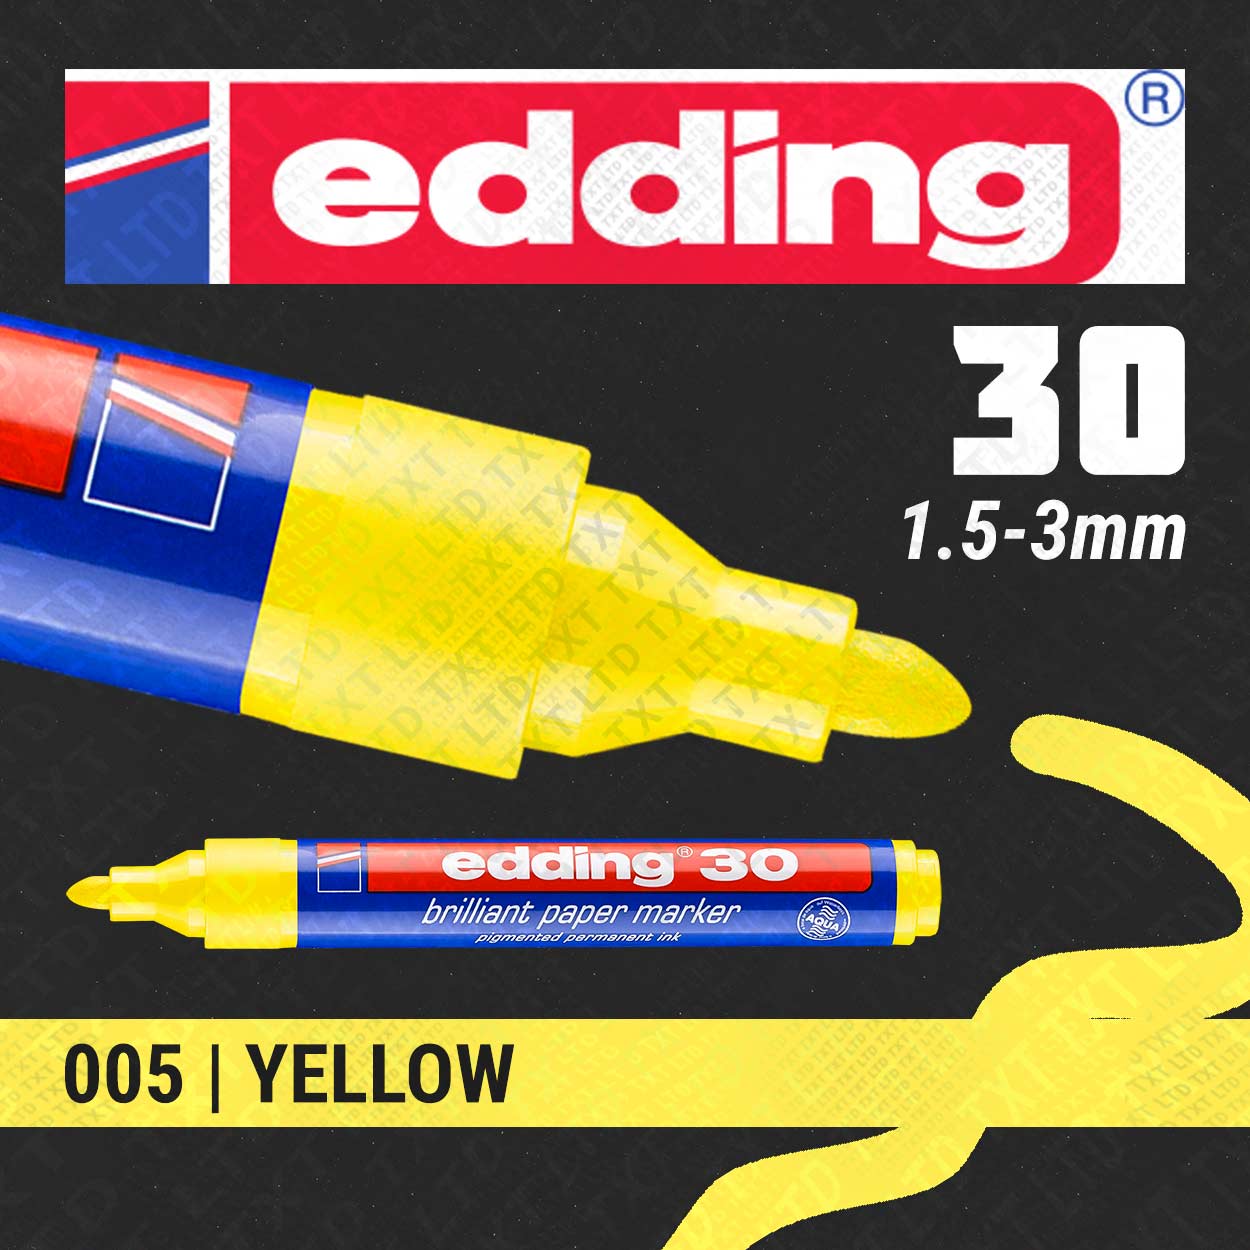 edding 30 Brilliant Paper Marker